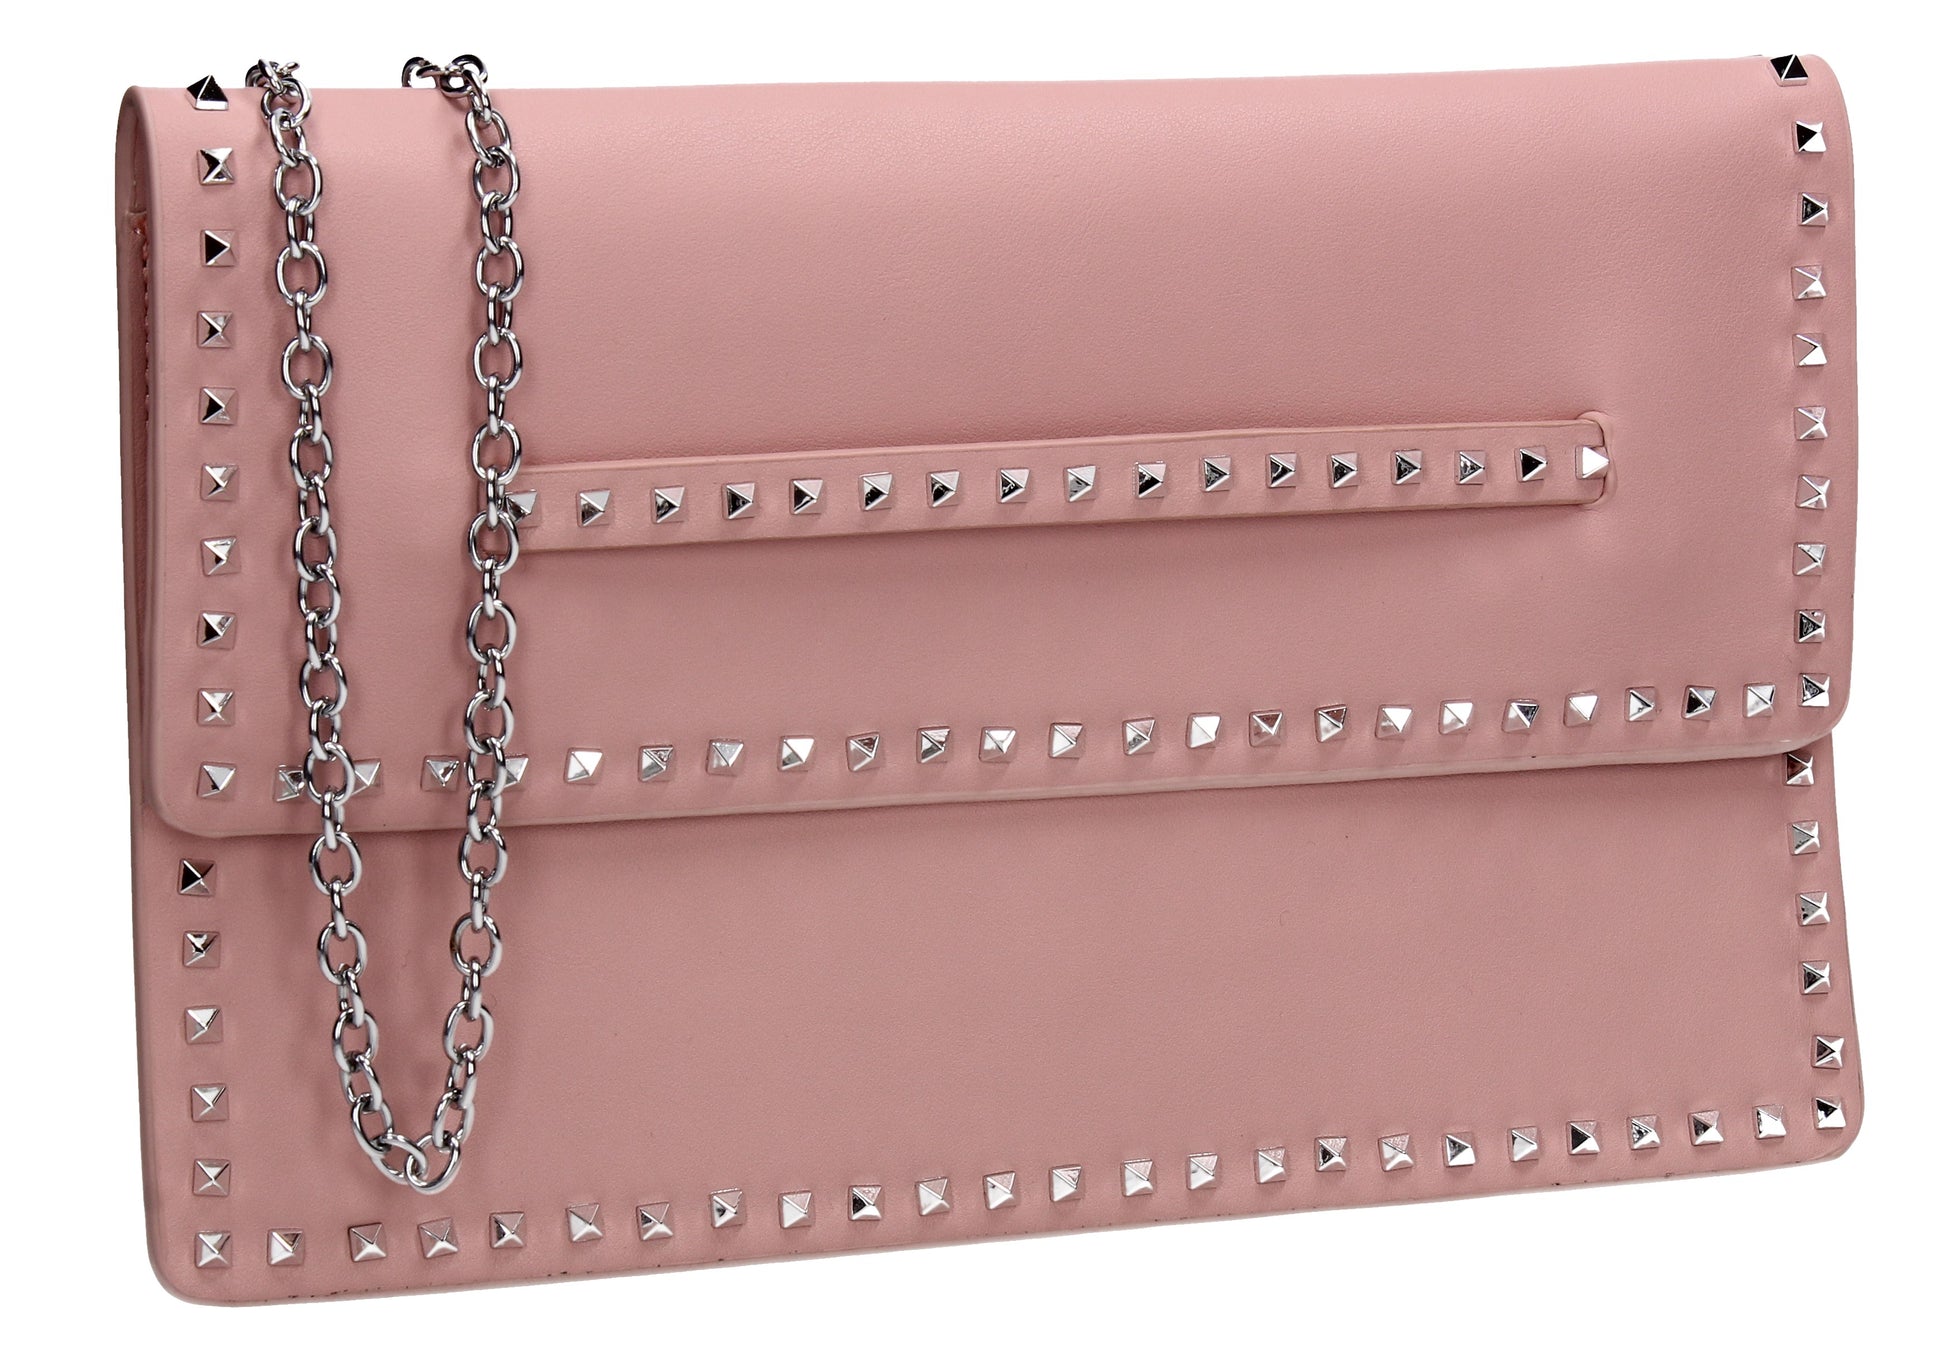 SWANKYSWANS Ciera Clutch Bag Flesh Pink Cute Cheap Clutch Bag For Weddings School and Work